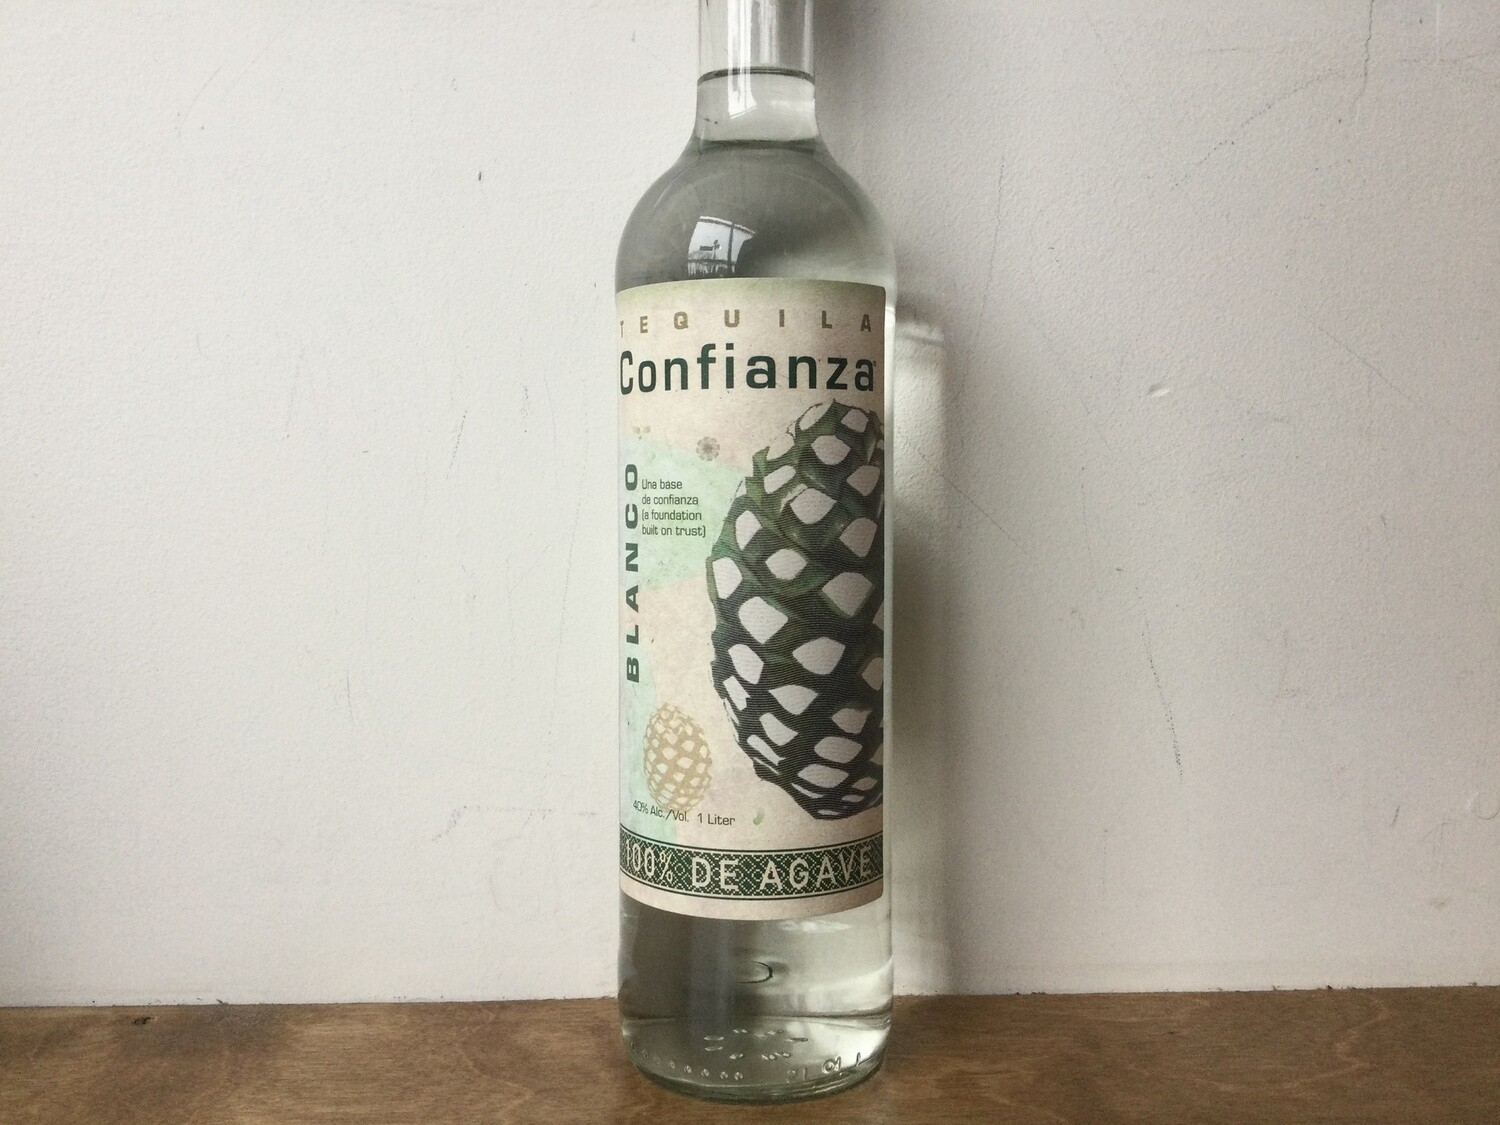 Tequila Confianza, Blanco Tequila 100% de Agave